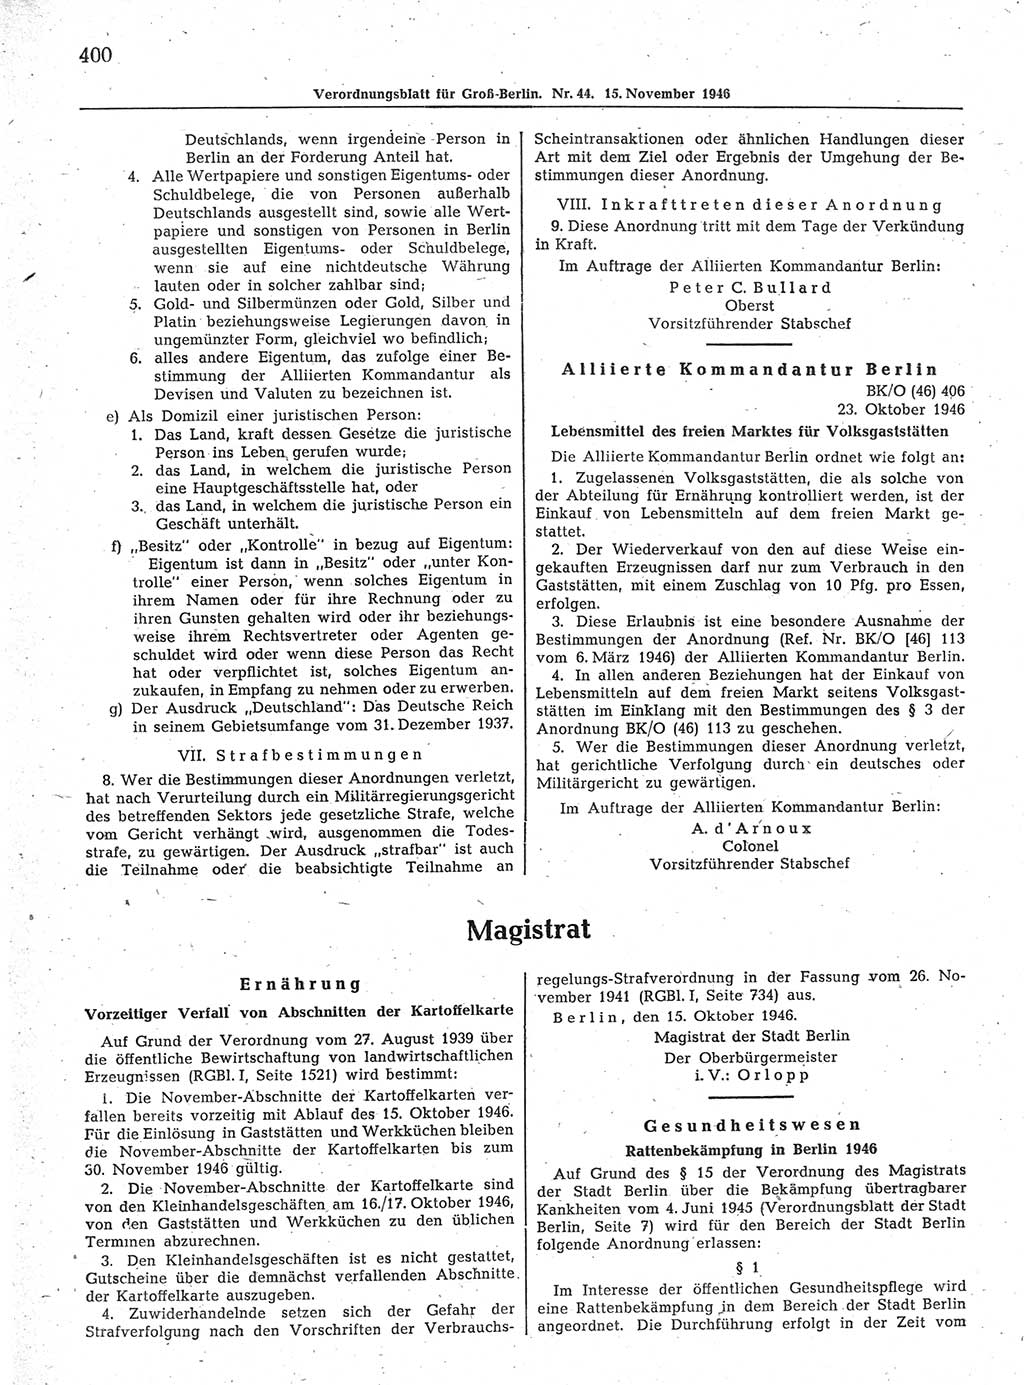 Verordnungsblatt (VOBl.) der Stadt Berlin, für Groß-Berlin 1946, Seite 400 (VOBl. Bln. 1946, S. 400)